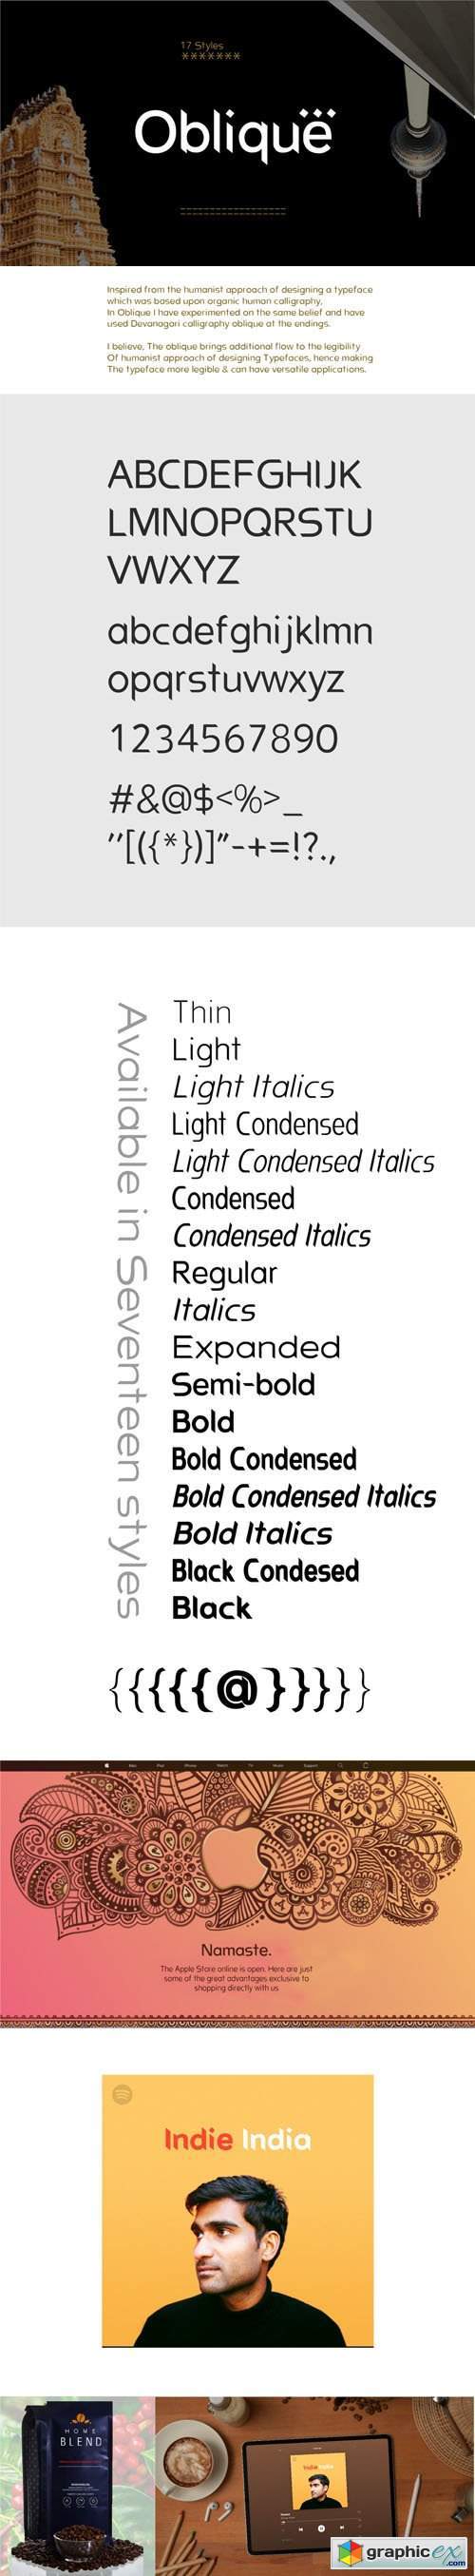 Oblique - Sans Serif Typeface [17-Weights]